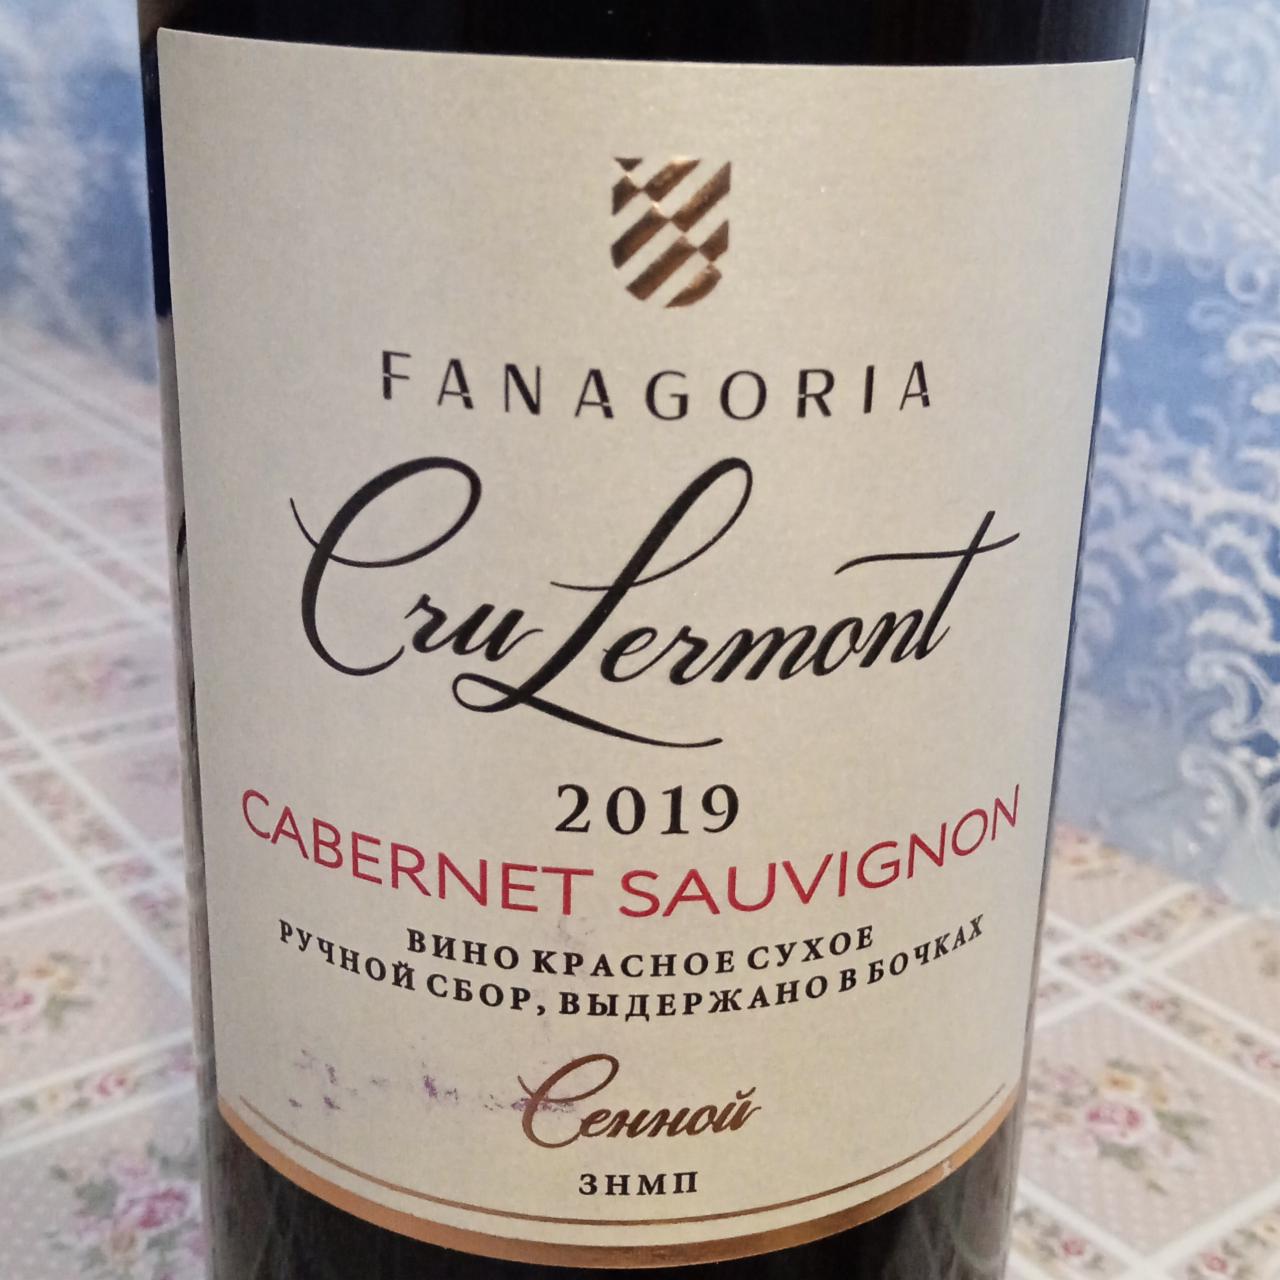 Фото - Вино сухое красное Крю Лермонт Каберне-Совиньон урожай 2019 Fanagoria